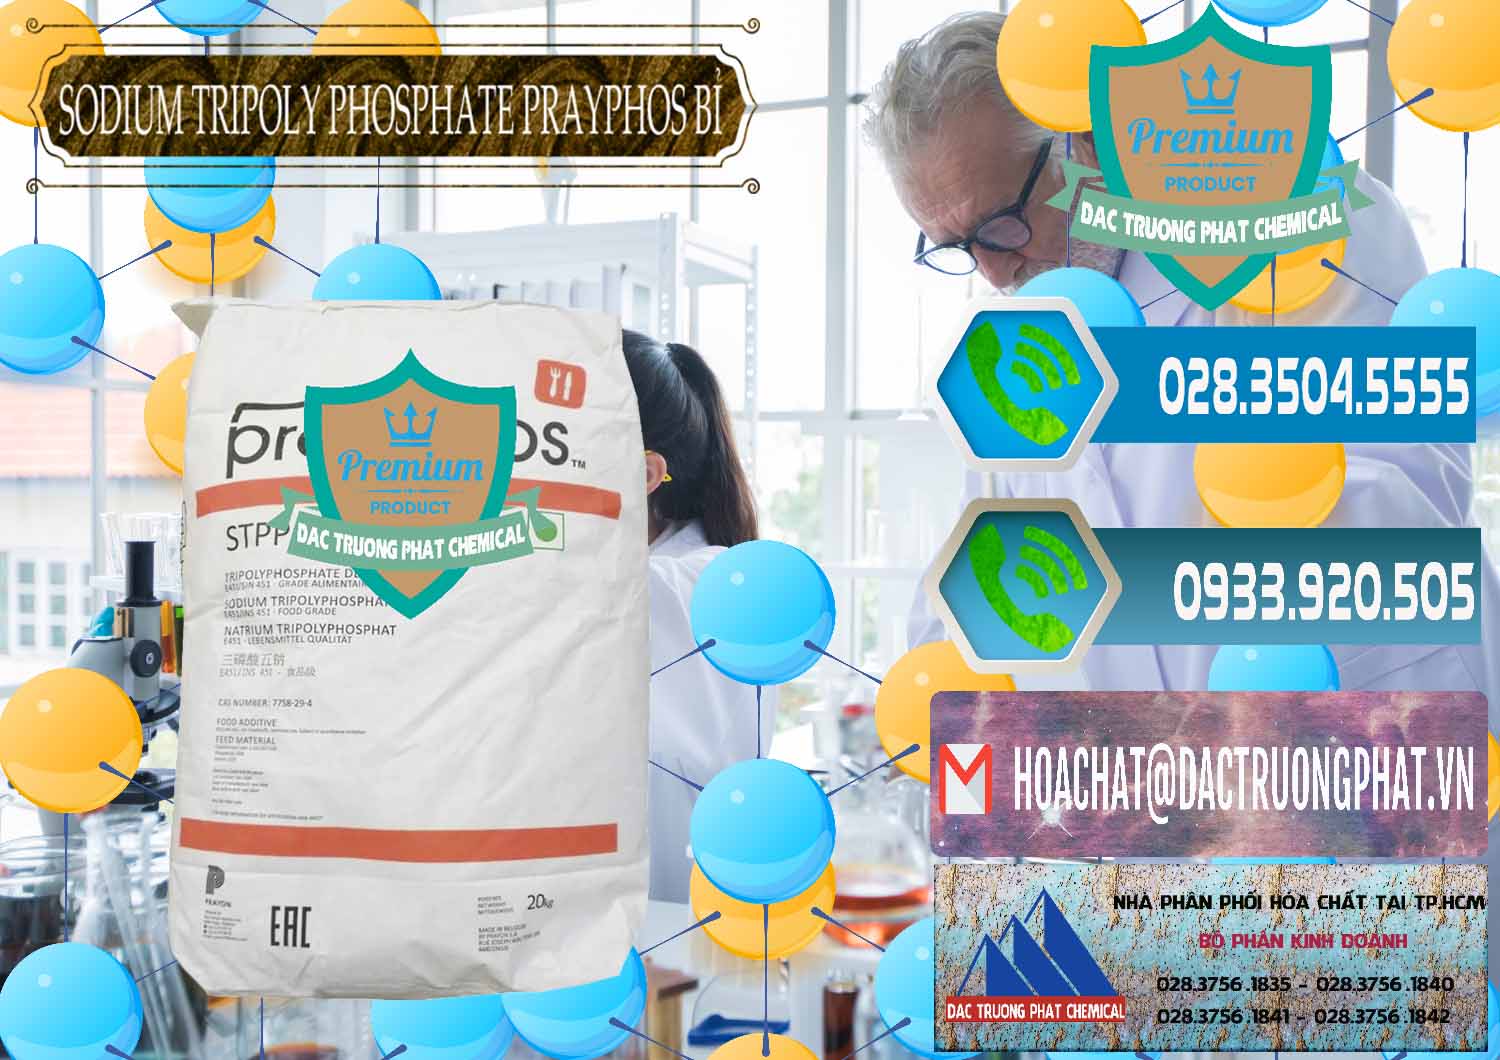 Nơi chuyên phân phối & bán Sodium Tripoly Phosphate - STPP Prayphos Bỉ Belgium - 0444 - Công ty chuyên cung cấp ( kinh doanh ) hóa chất tại TP.HCM - congtyhoachat.net